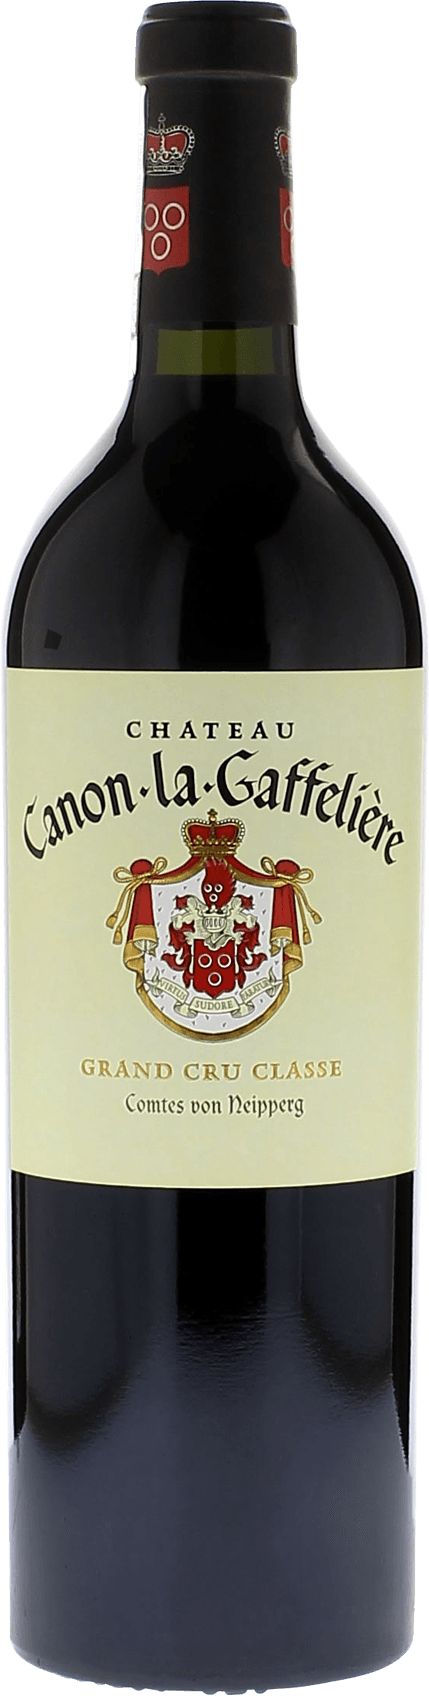 Canon la gaffeliere 2016 1er Grand cru class Saint-Emilion, Bordeaux rouge